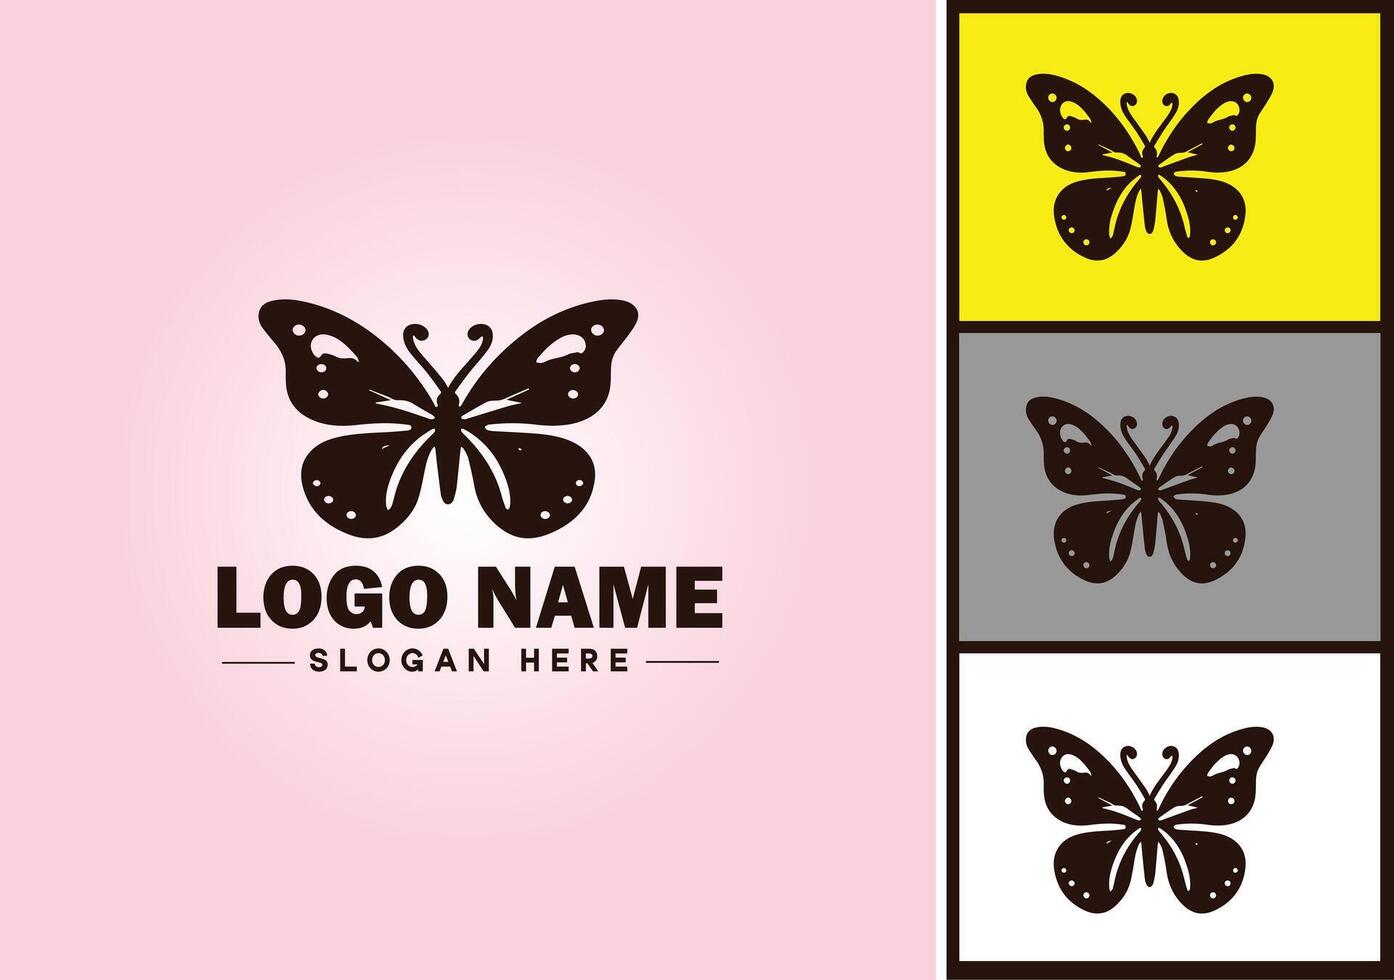 farfalla logo vettore arte icona grafica per azienda marca icona farfalla logo modello